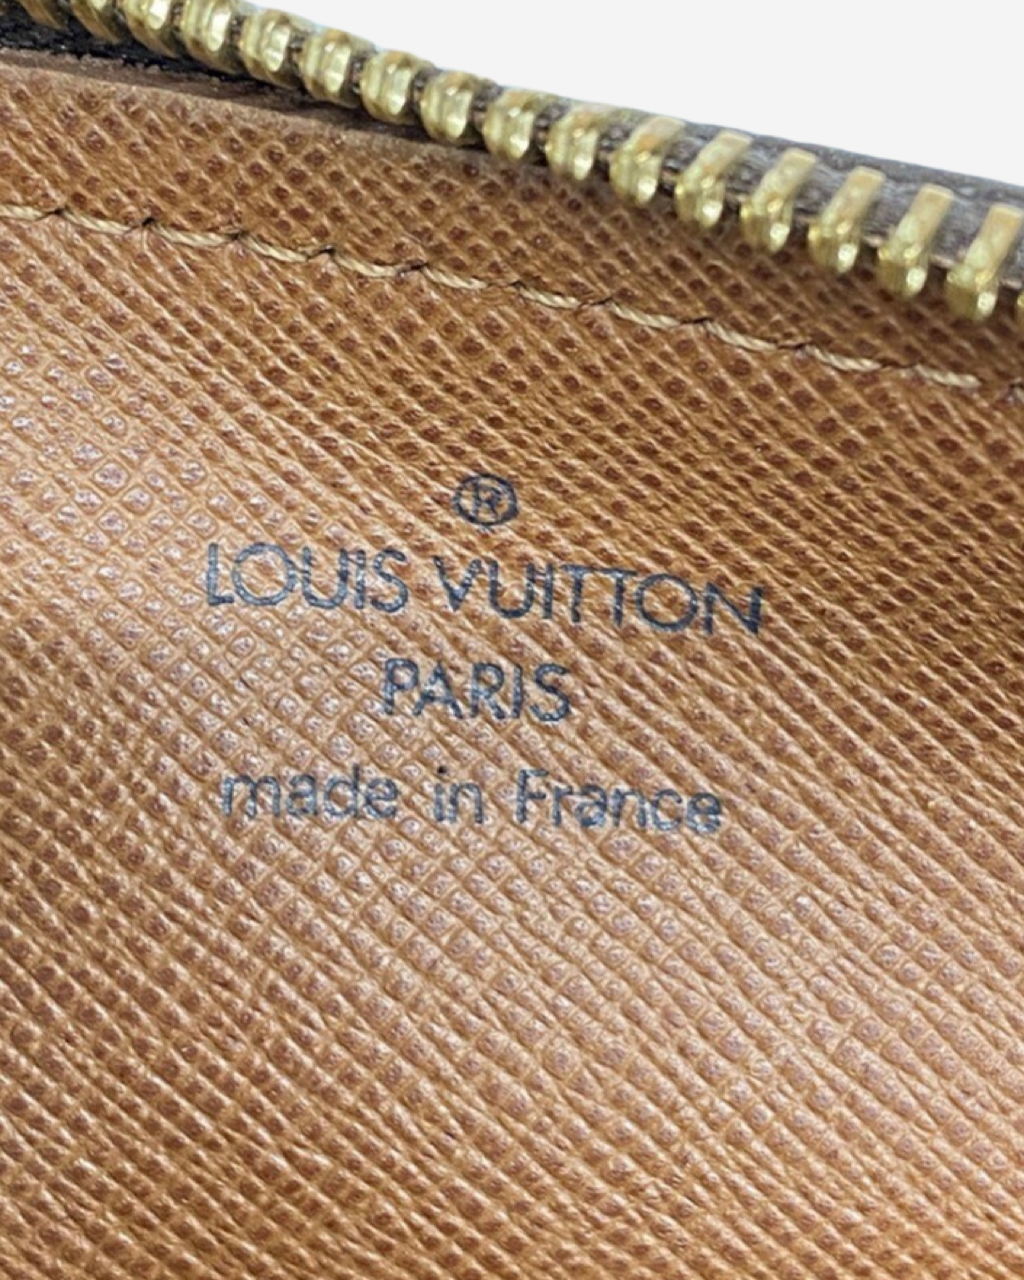 Bolsa Louis Vuitton Papillon 26